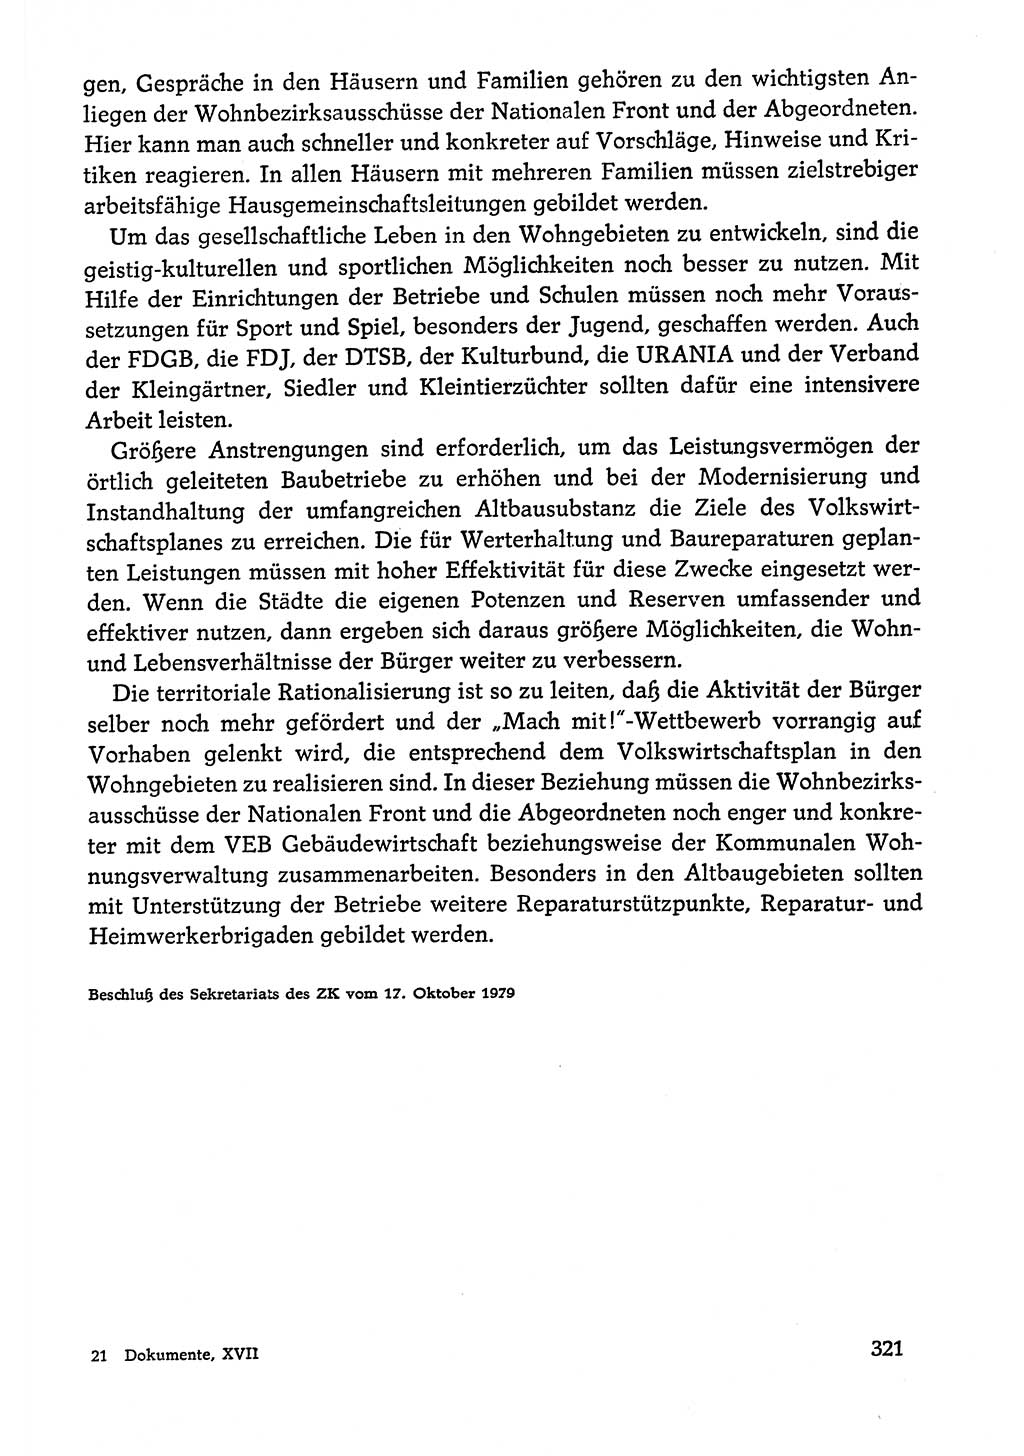 Dokumente der Sozialistischen Einheitspartei Deutschlands (SED) [Deutsche Demokratische Republik (DDR)] 1978-1979, Seite 321 (Dok. SED DDR 1978-1979, S. 321)